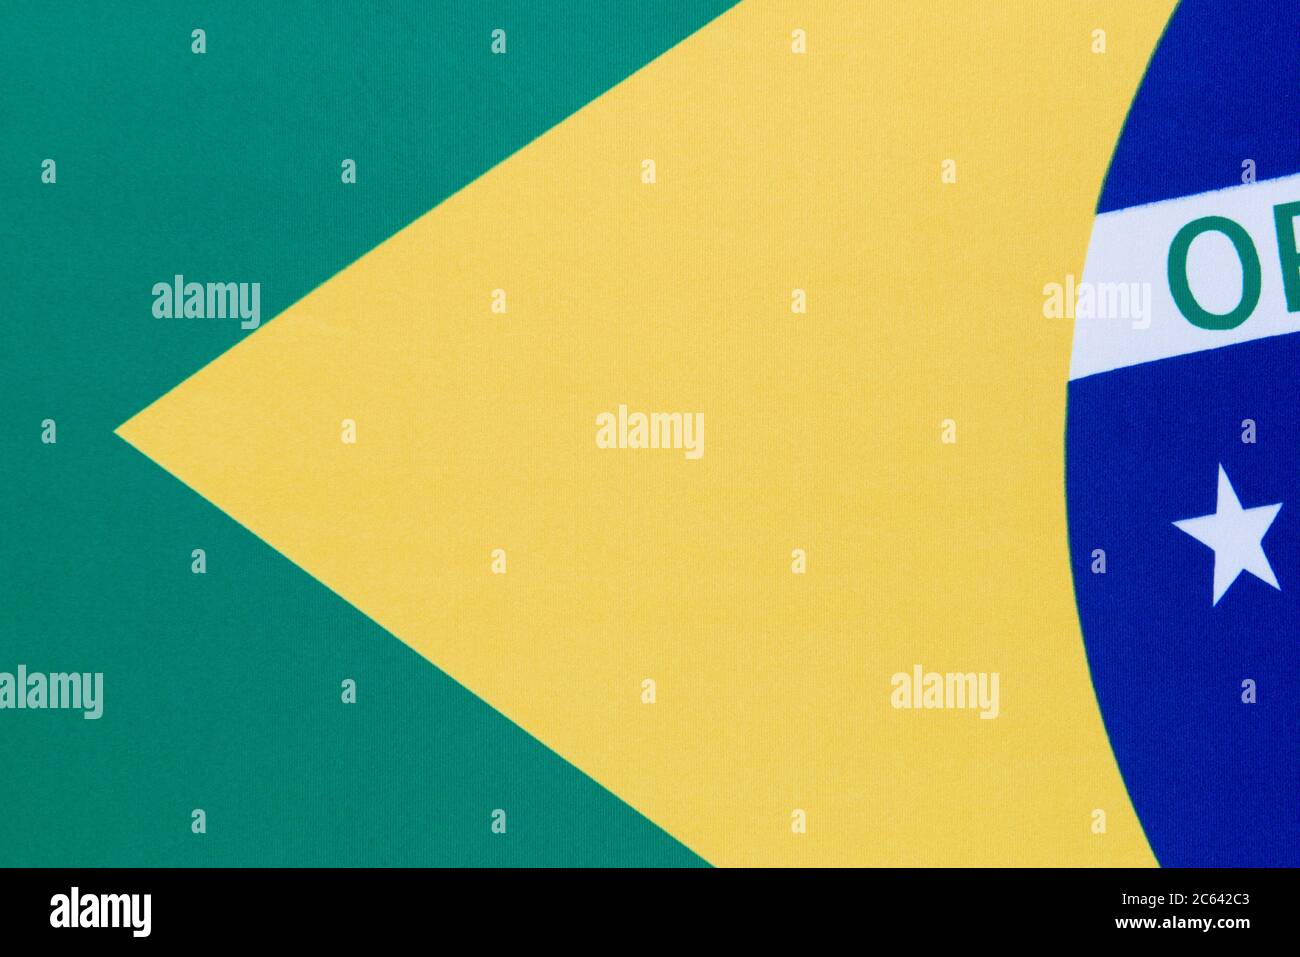 Vue rognée du drapeau brésilien. Chaque étoile représente un état brésilien. Il y a 26 étoiles sur le drapeau. Banque D'Images